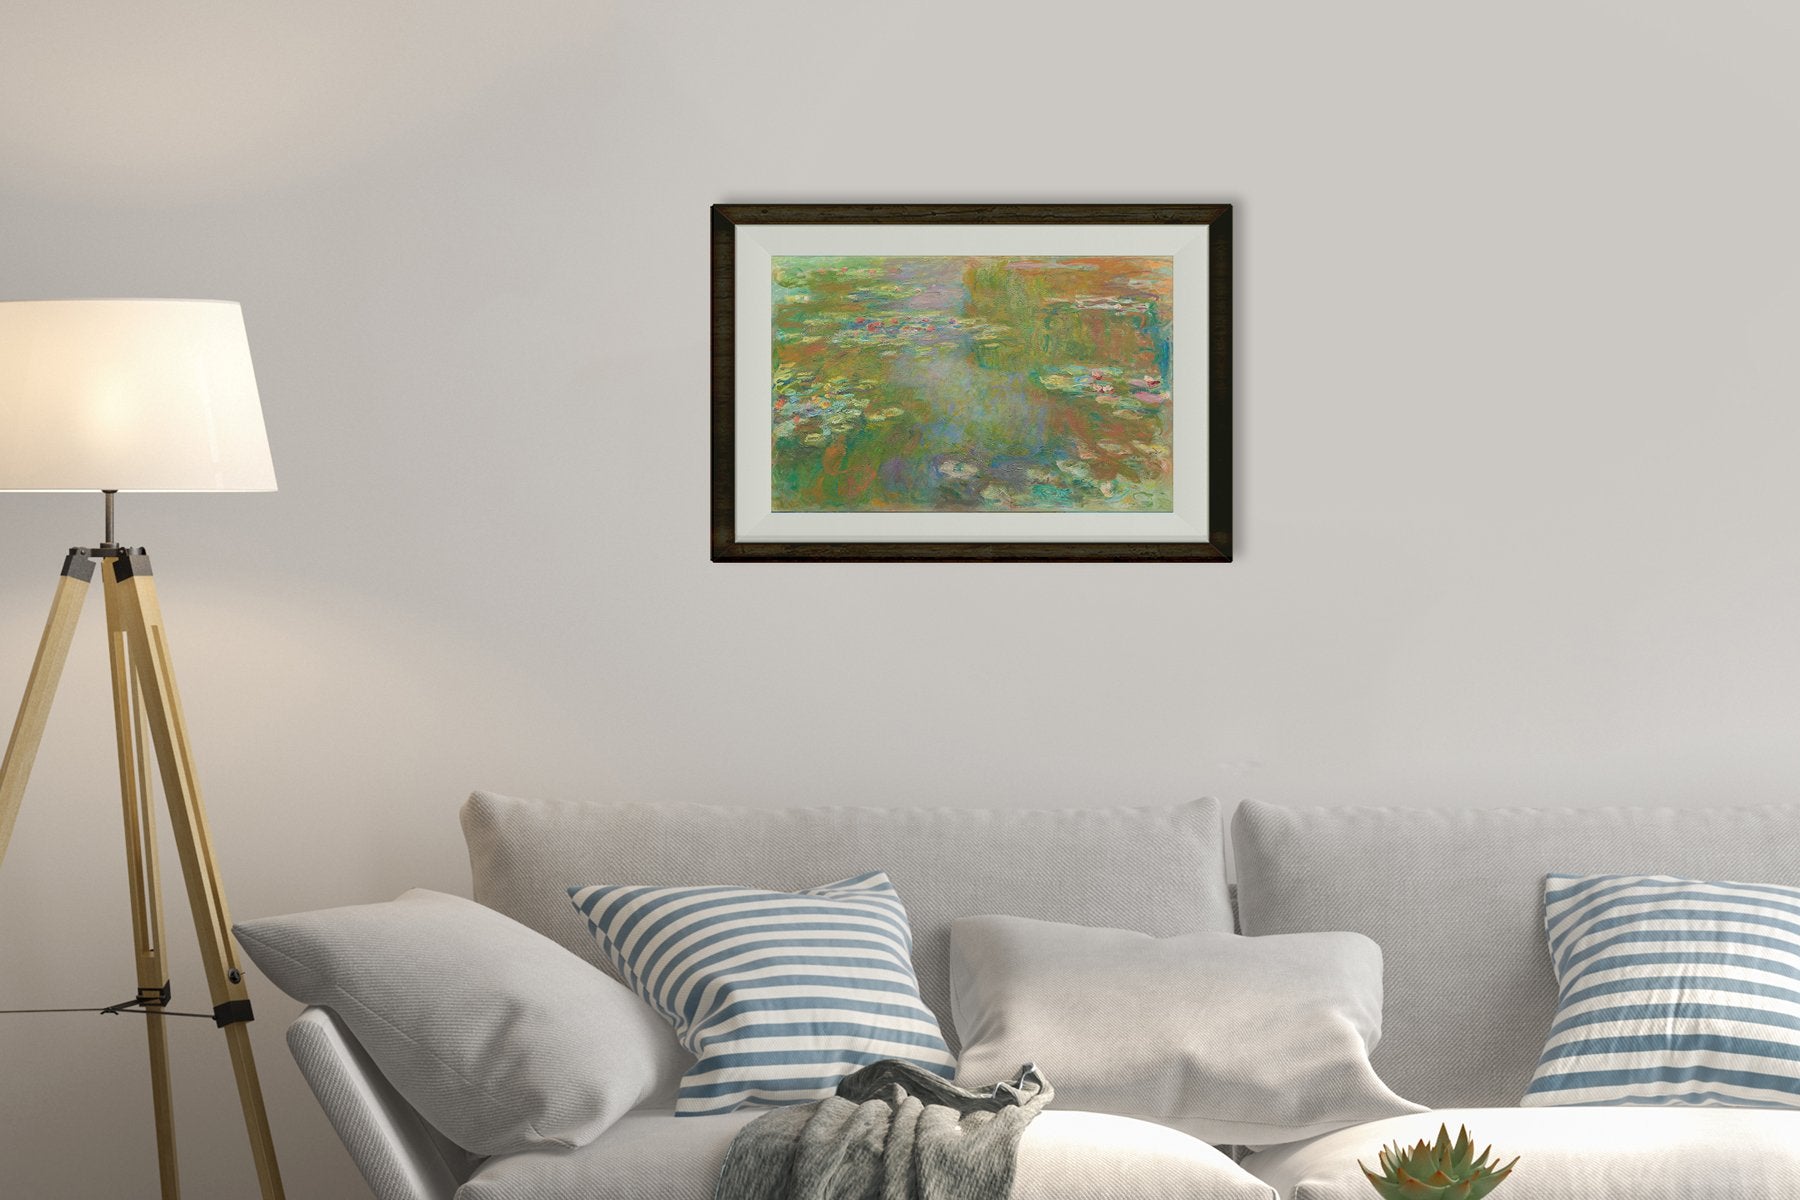 The Water Lily Pond By Claude Monet Painting - Meri Deewar - MeriDeewar